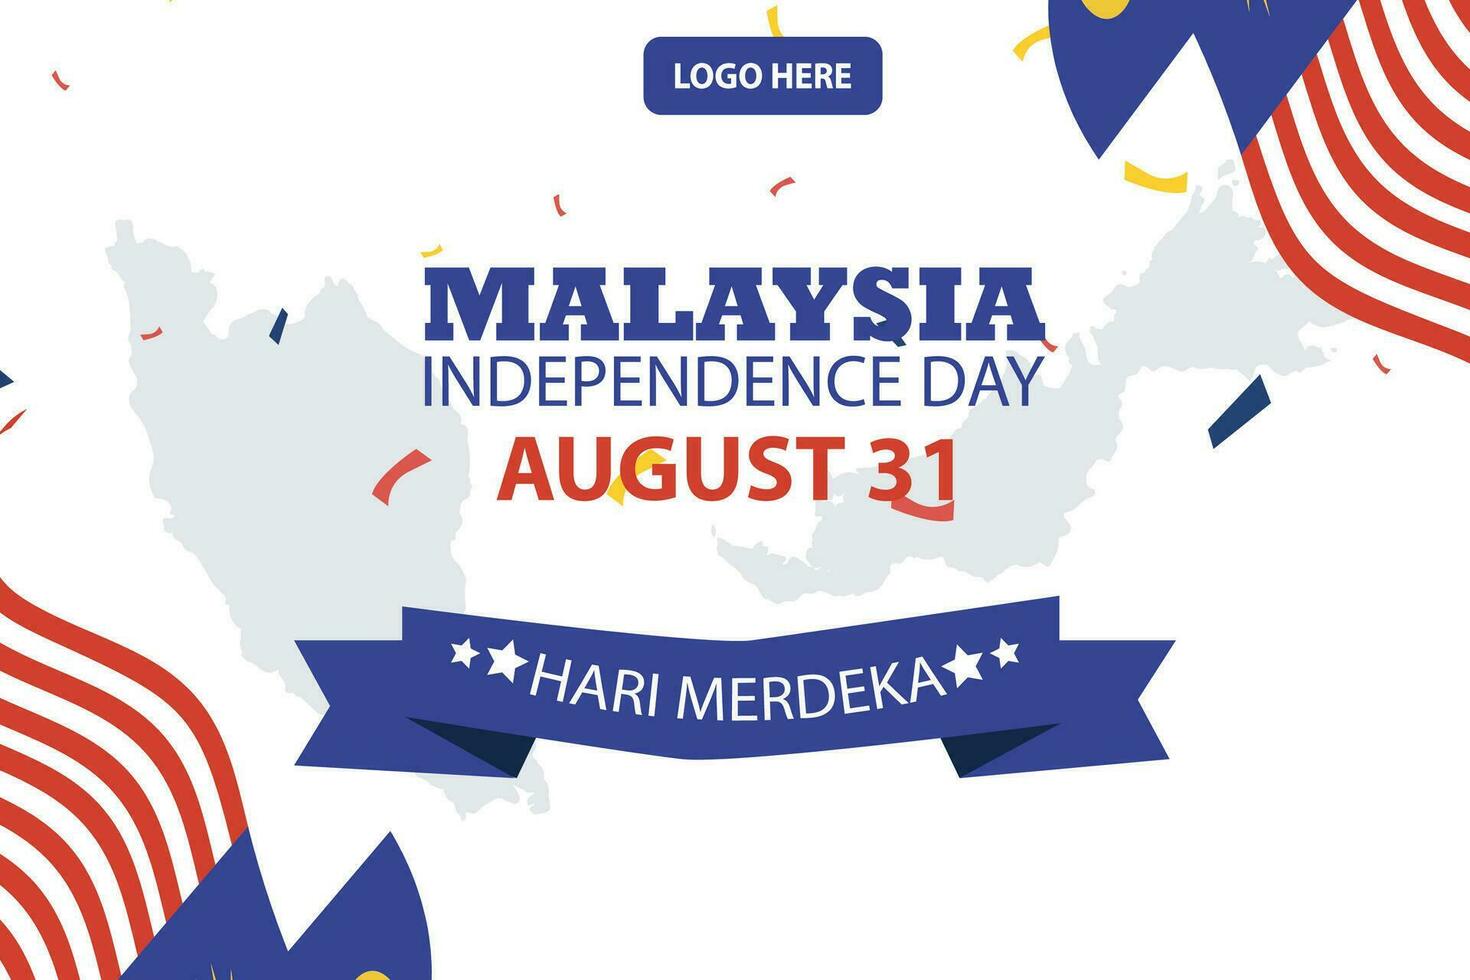 contento independencia día Malasia 31 agosto. bandera, social medios de comunicación correo, volantes o saludo tarjeta con el tema de azul rojo dificil y bandera de Malasia. vector ilustración